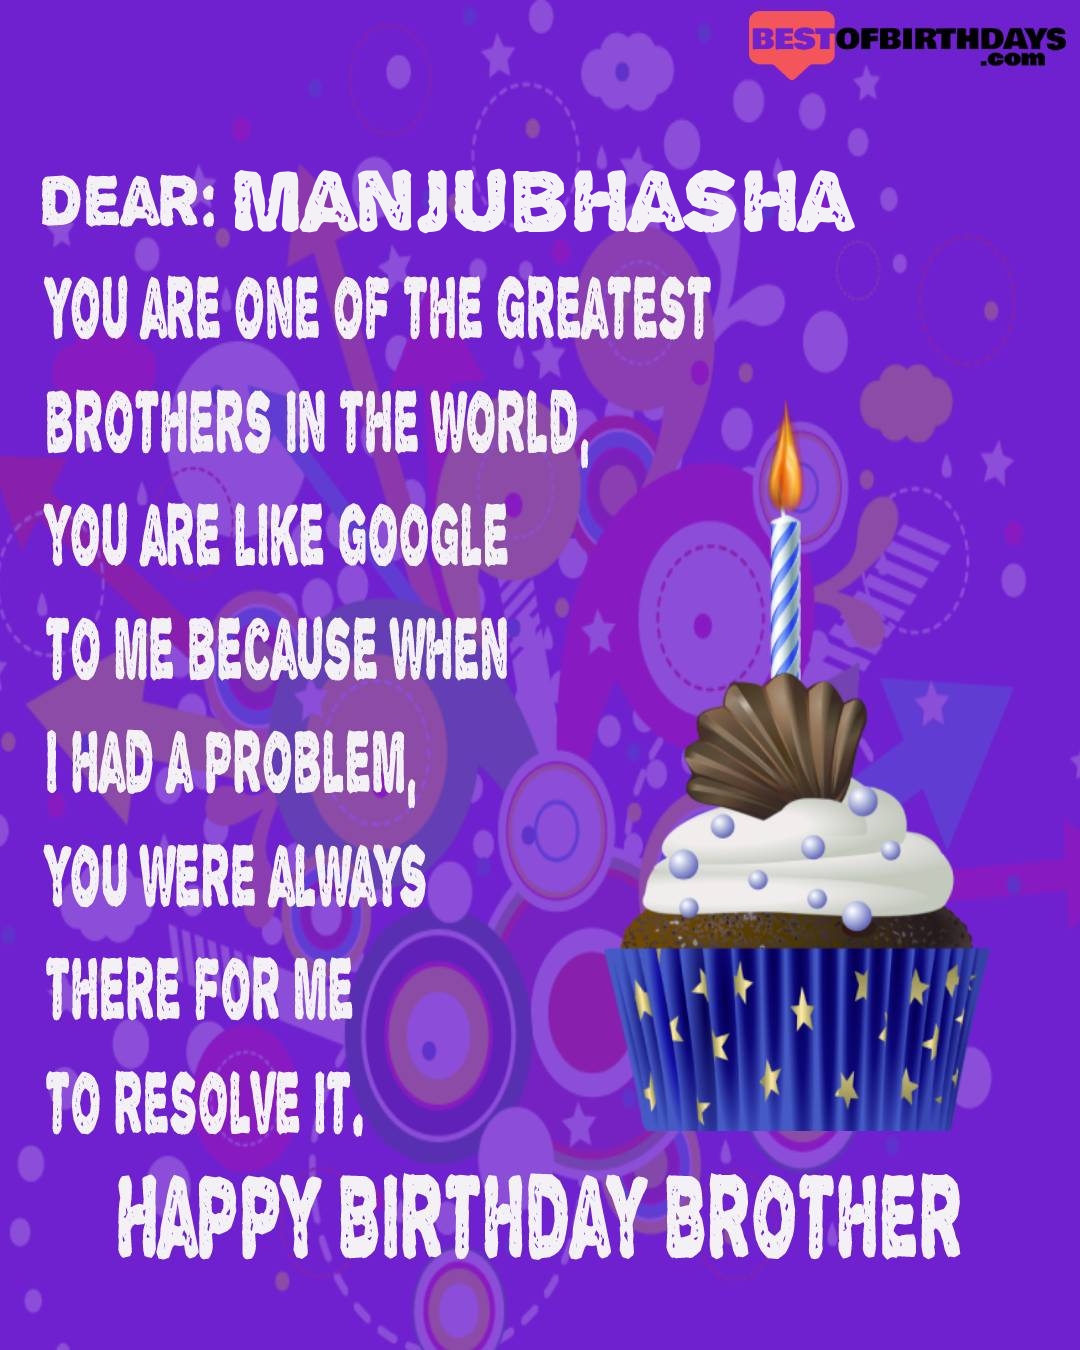 Happy birthday manjubhasha bhai brother bro